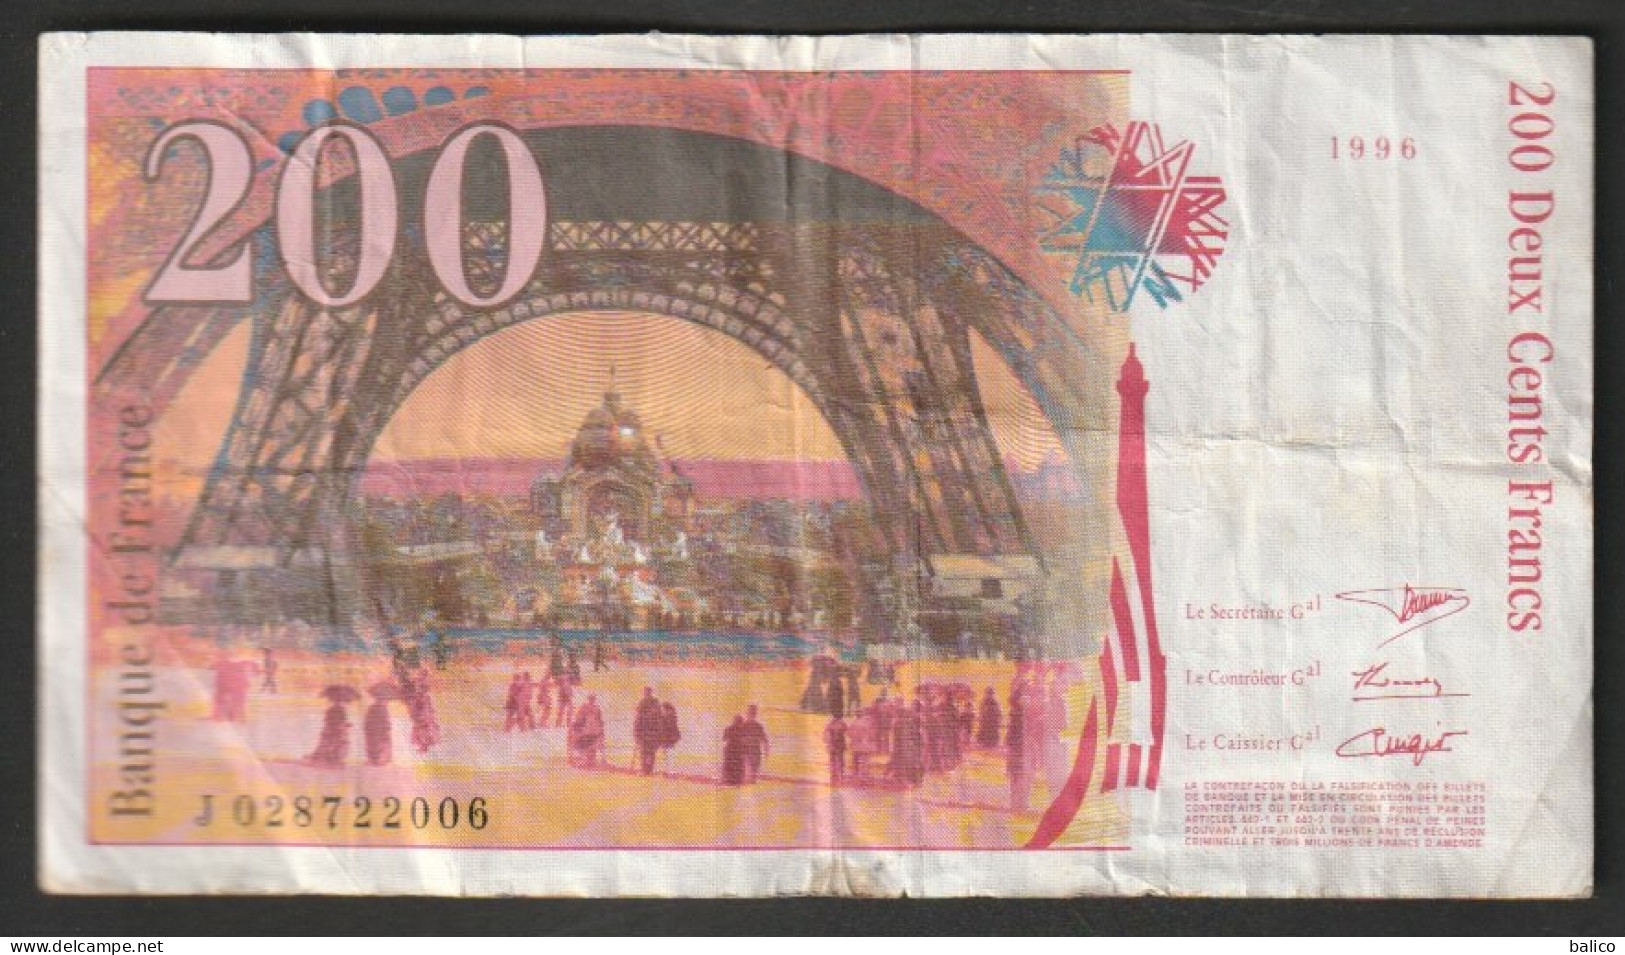 200 Francs - Gustave Eiffel -  N°  - J028722006  Année 1996 - 200 F 1995-1999 ''Eiffel''